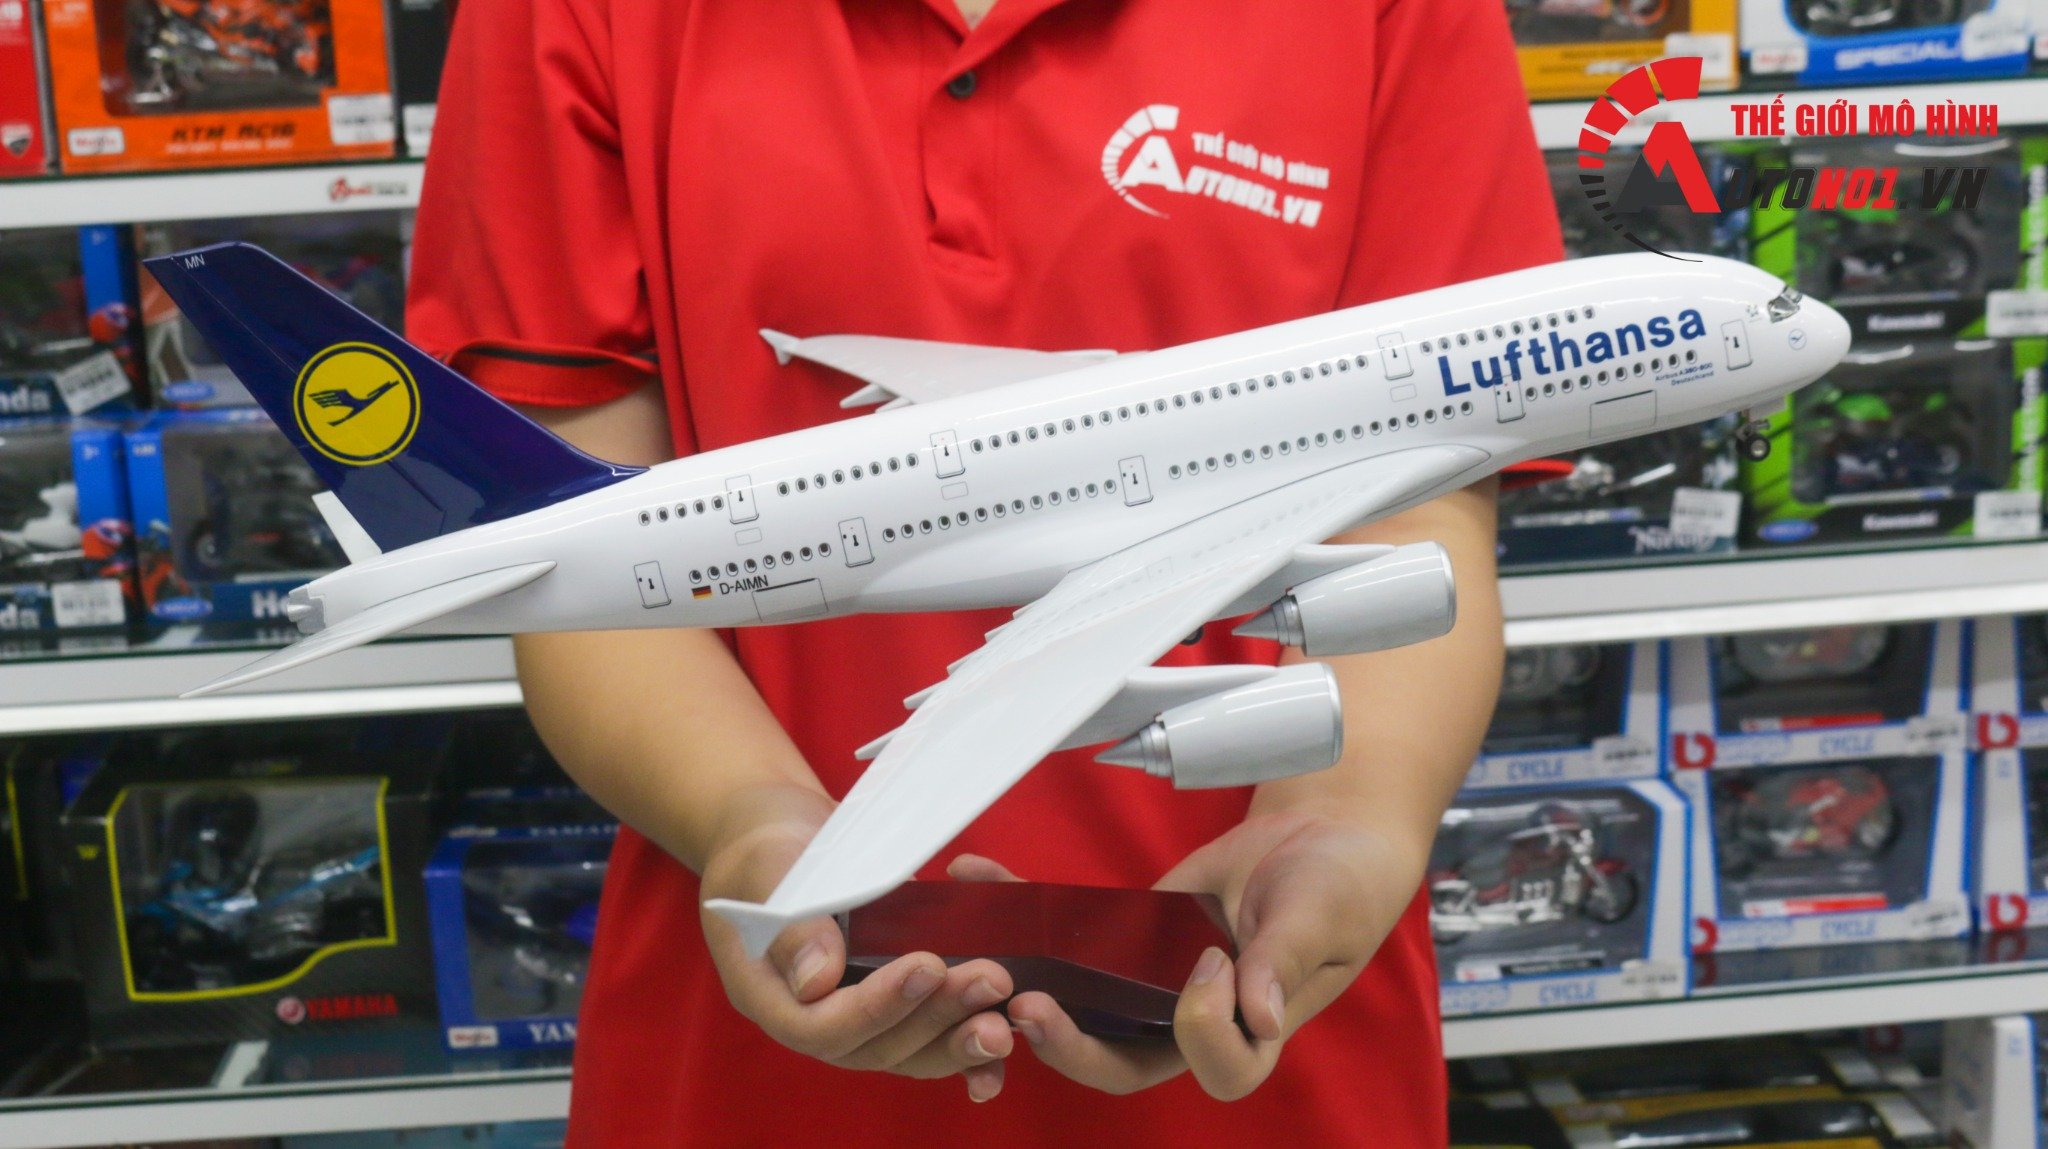  Mô hình máy bay Deutsche Lufthansa Germany - Đức Airbus A380 47cm 1:160 có đèn led tự động theo tiếng vỗ tay hoặc chạm MB47030 